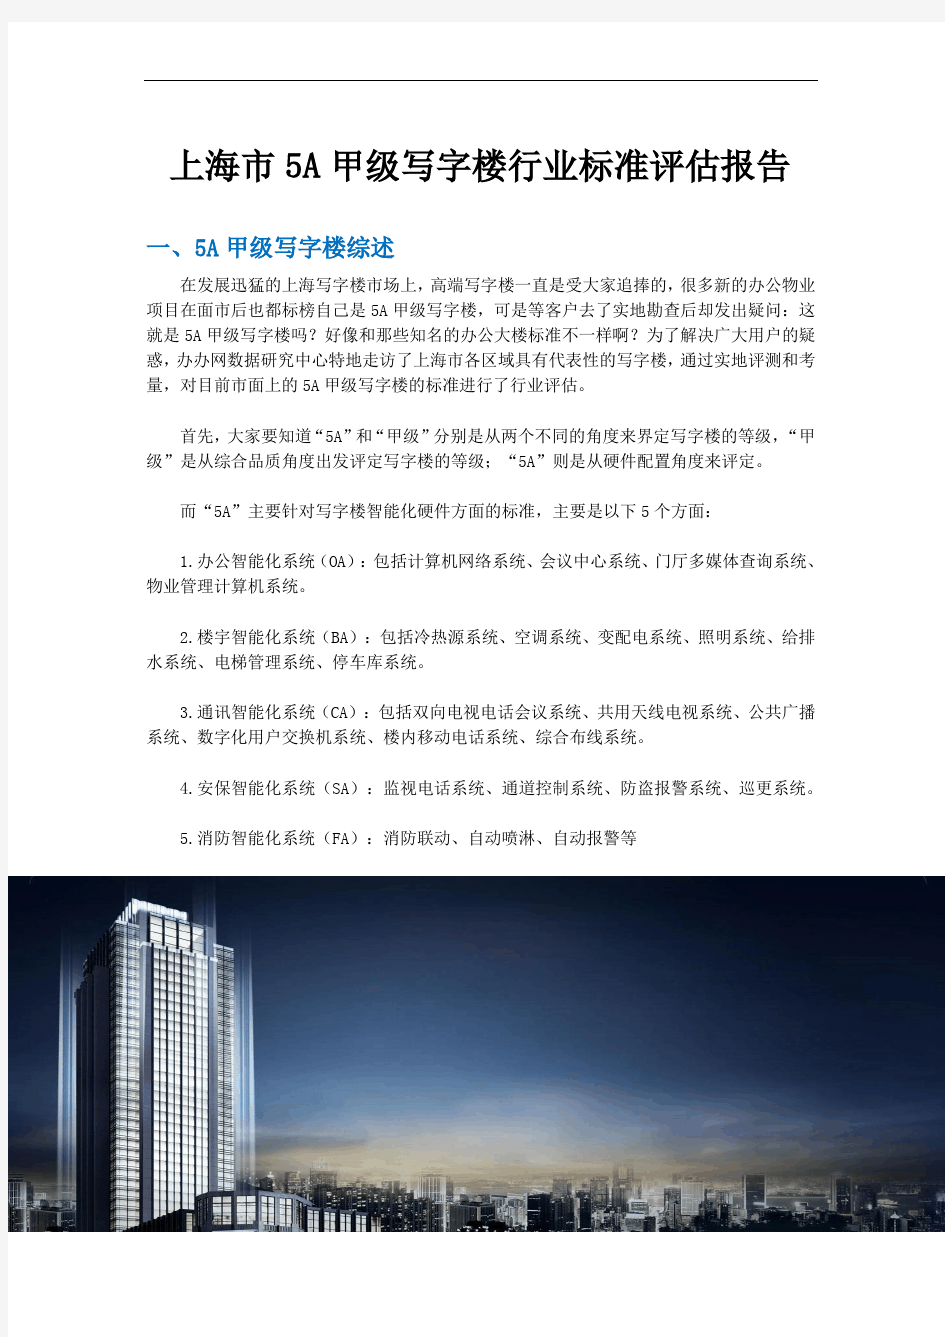 上海市5A甲级写字楼行业标准评估报告